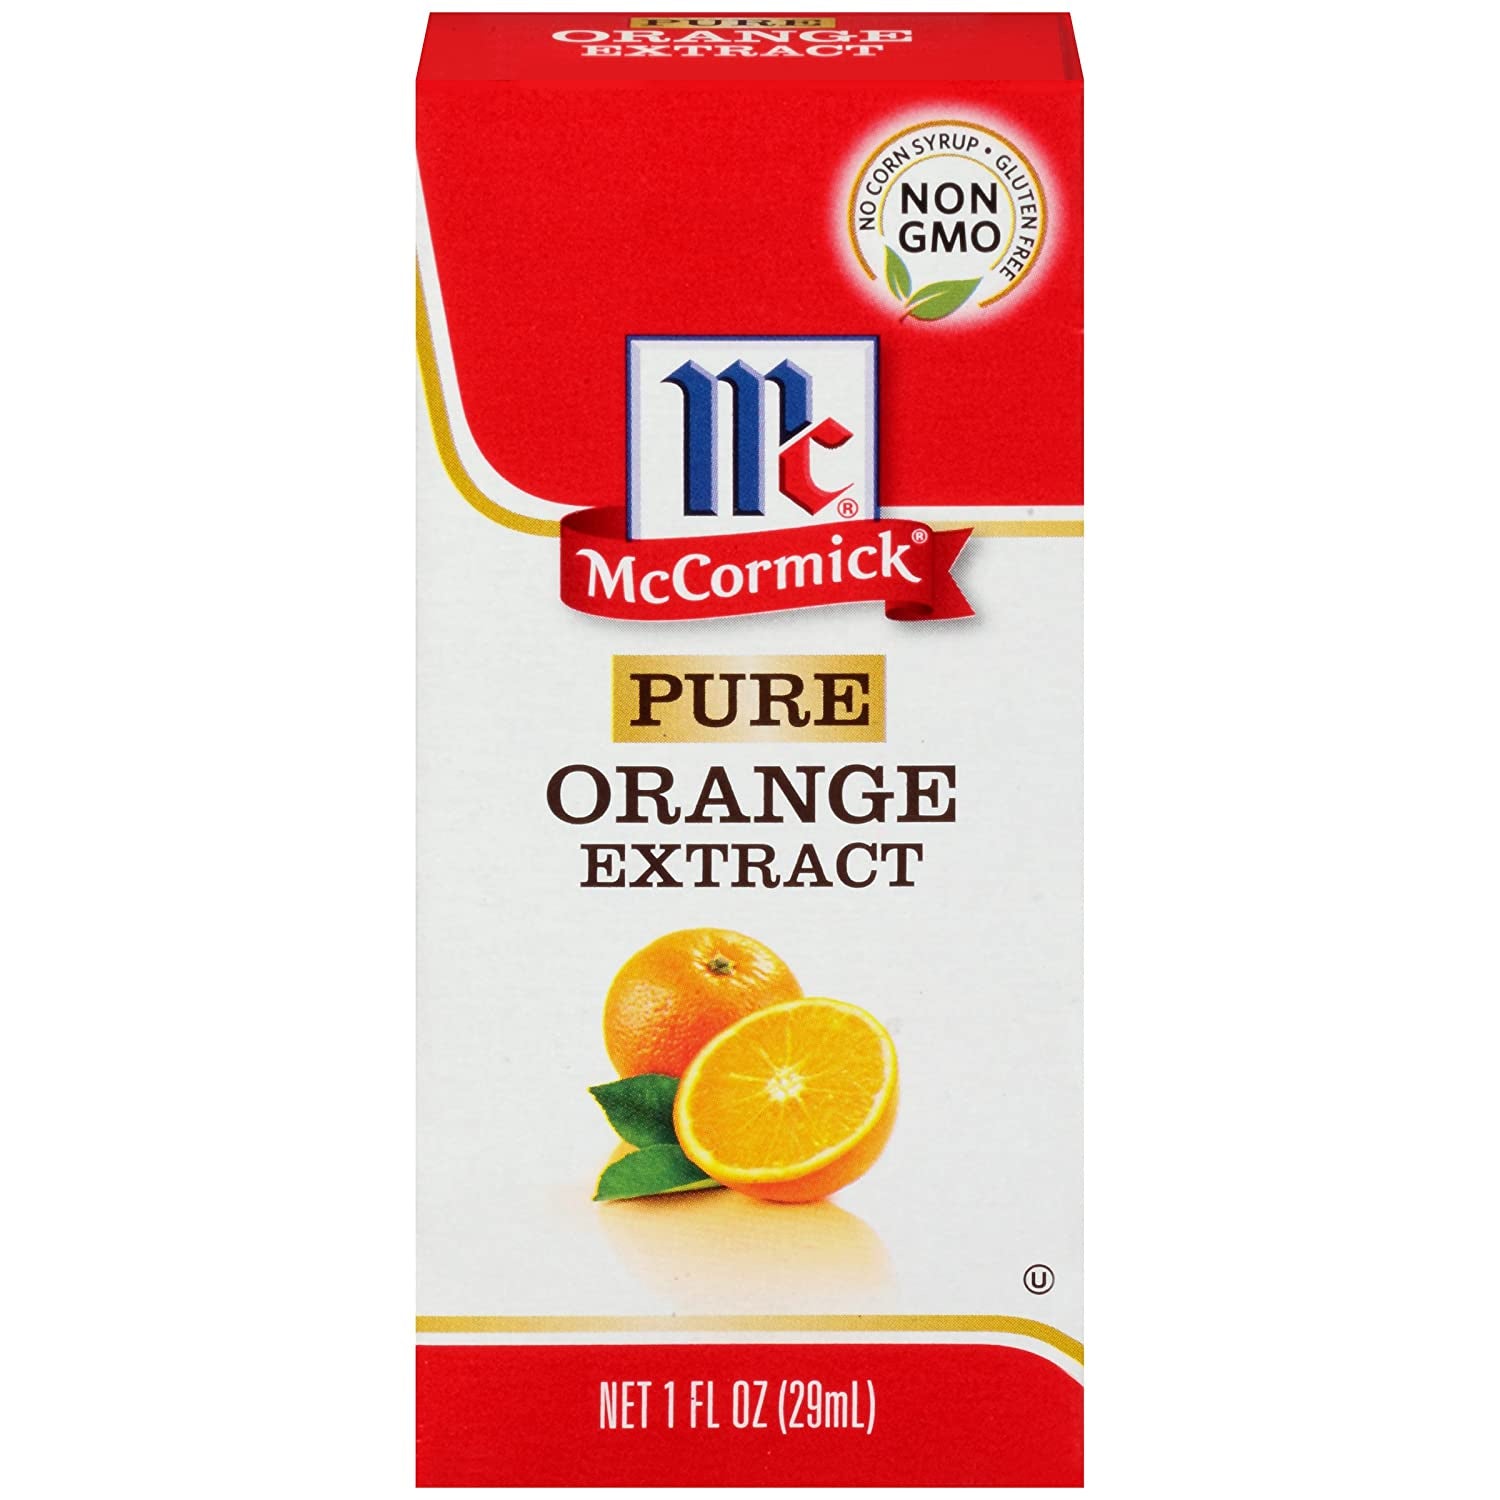 McCormick Pure Orange Extract 1oz